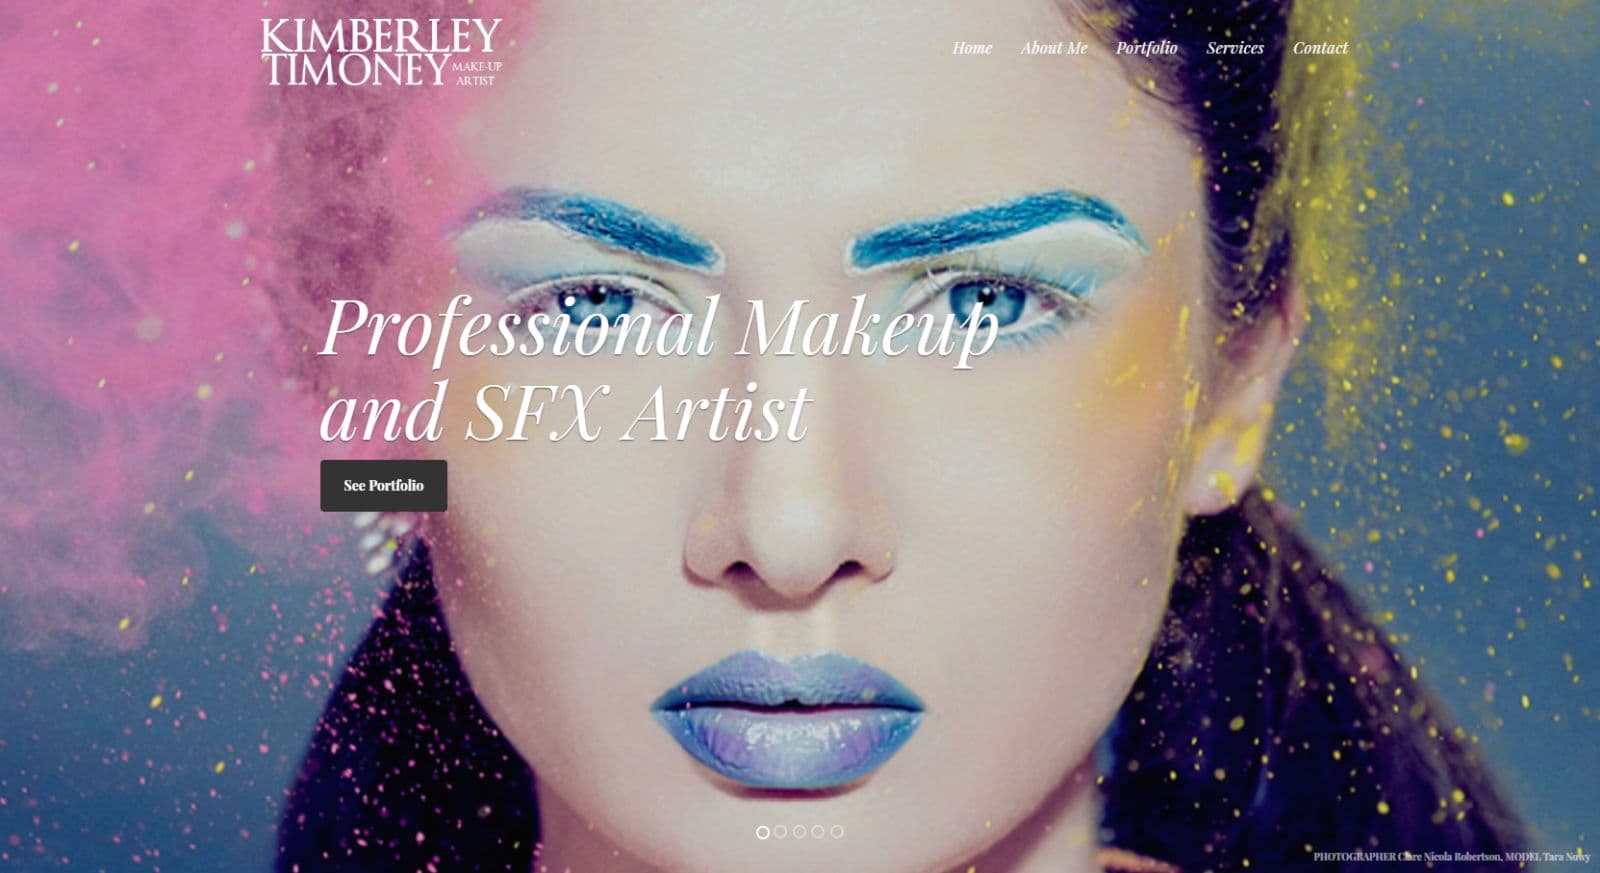 Kimberly Timoney Website Development Homepage